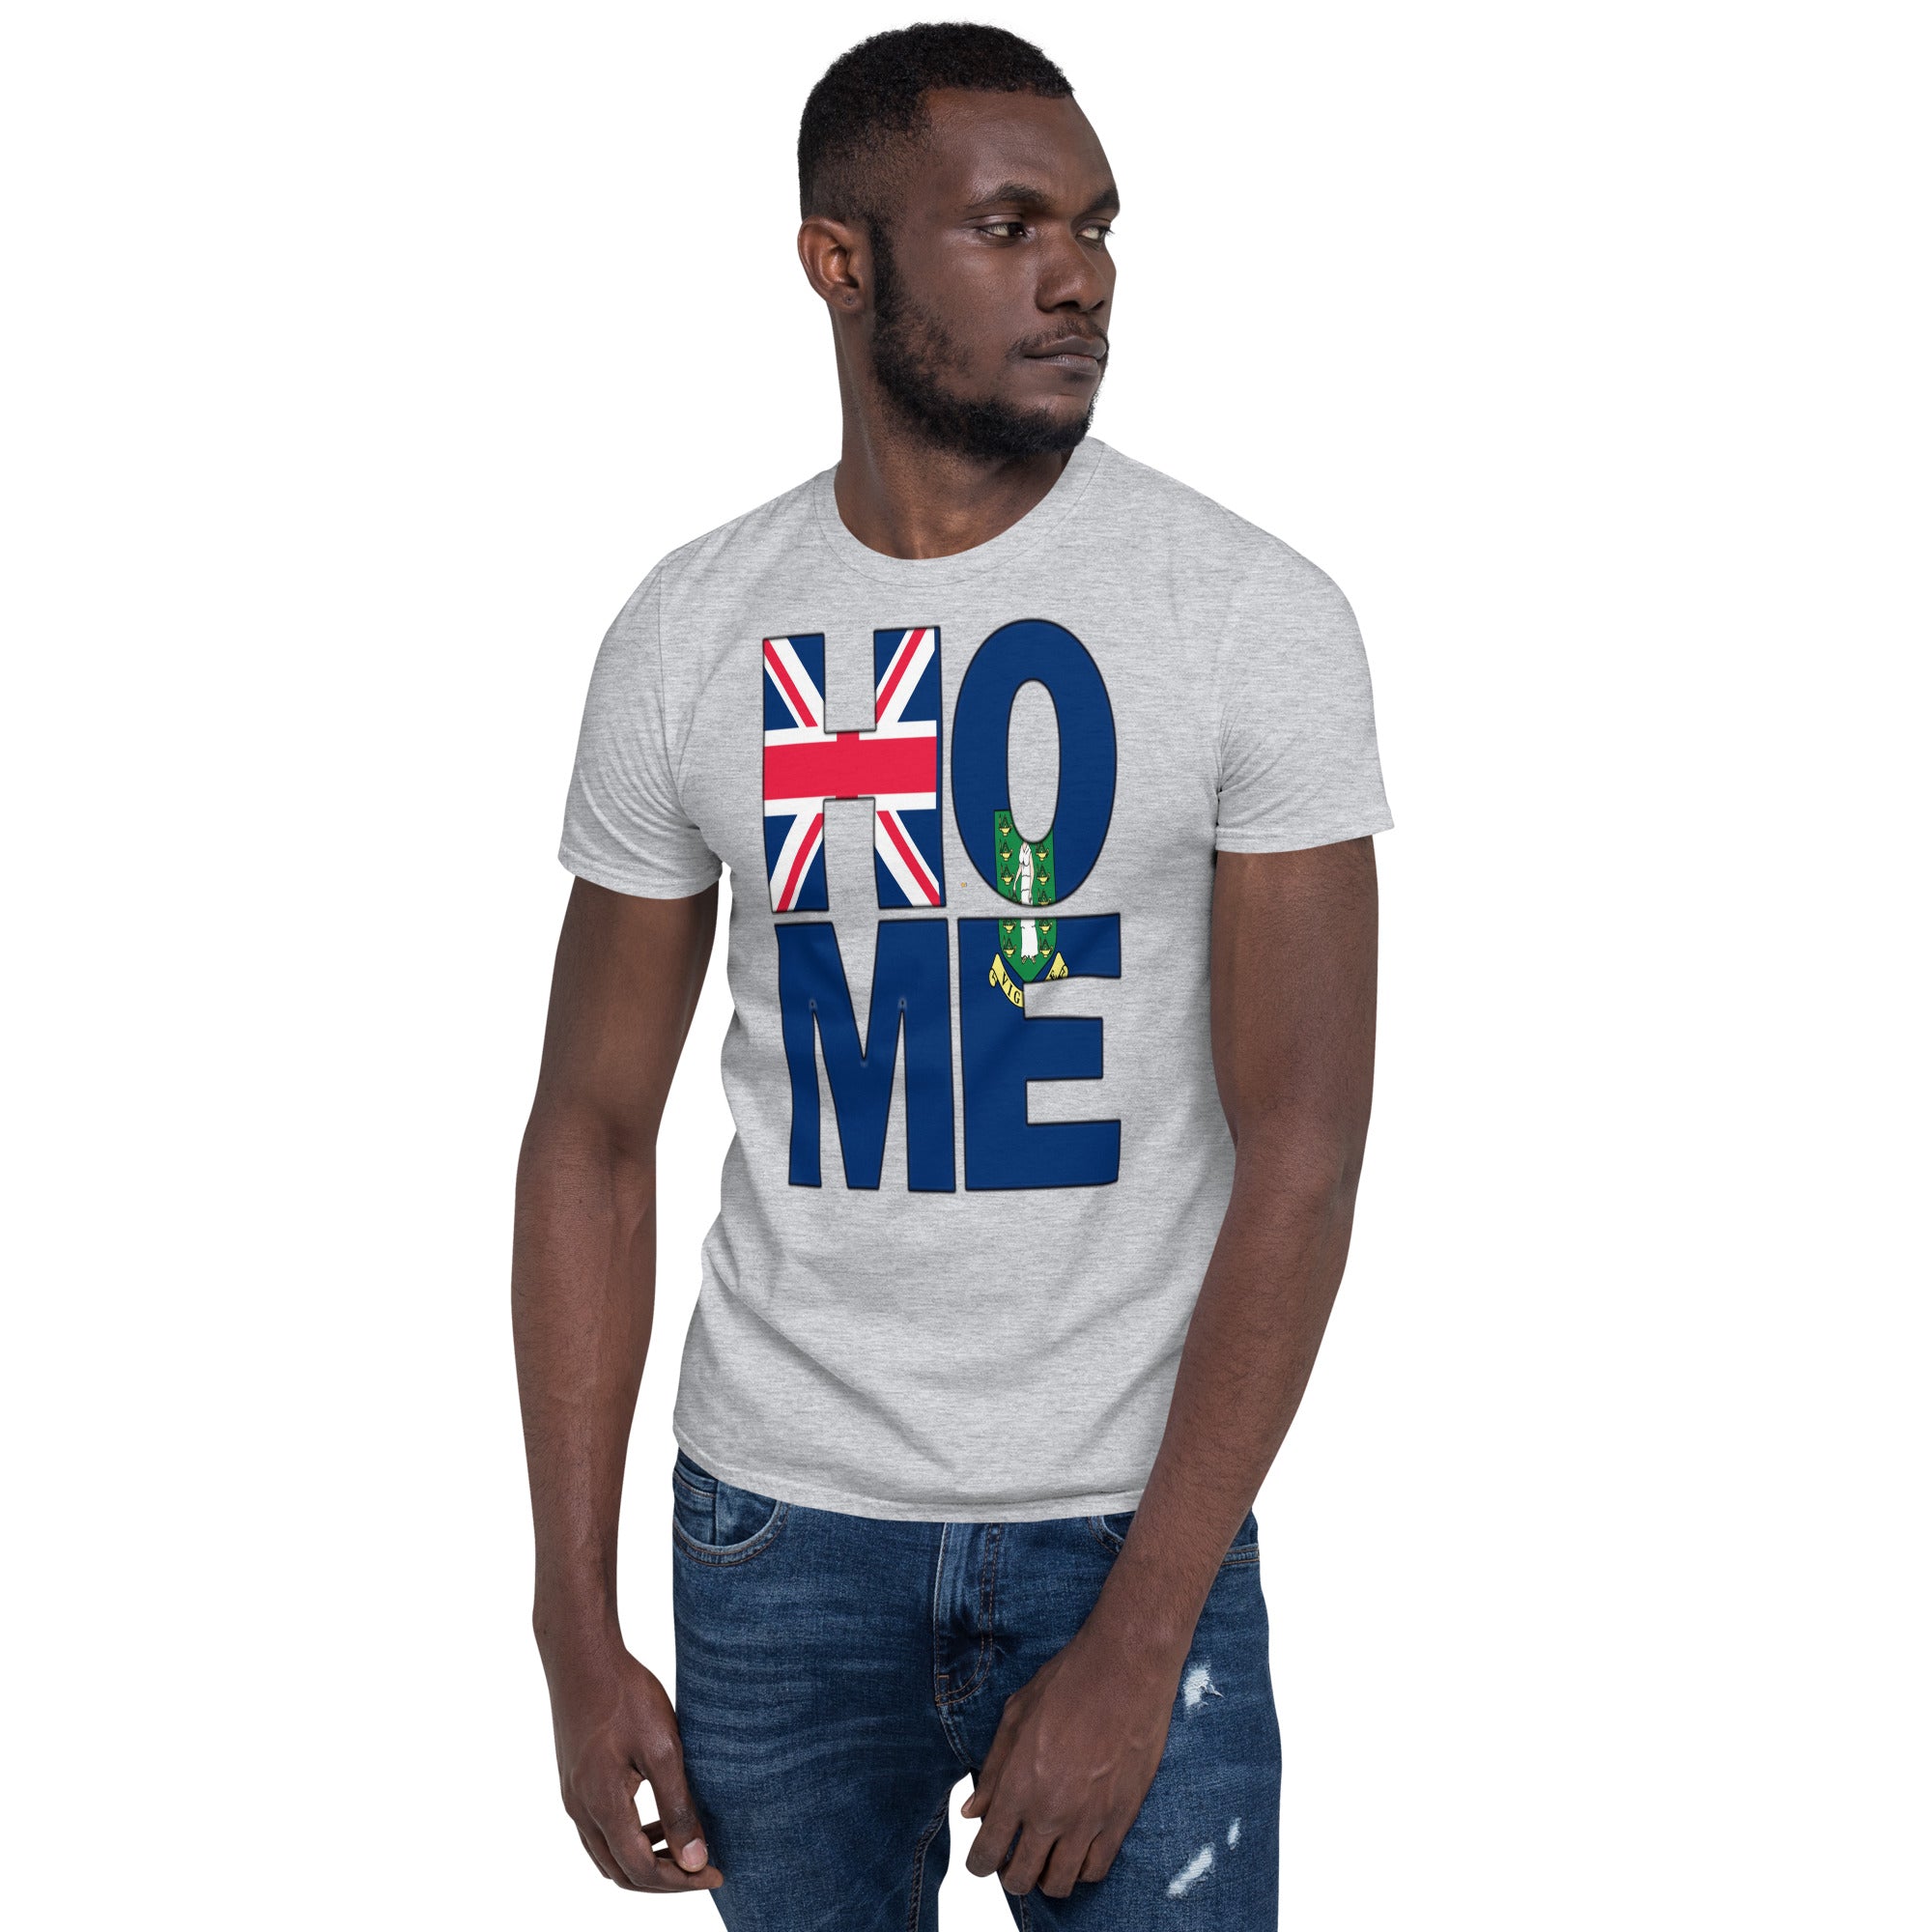 British Virgin Islands flag spelling HOME on black men wearing sport grey color shirt